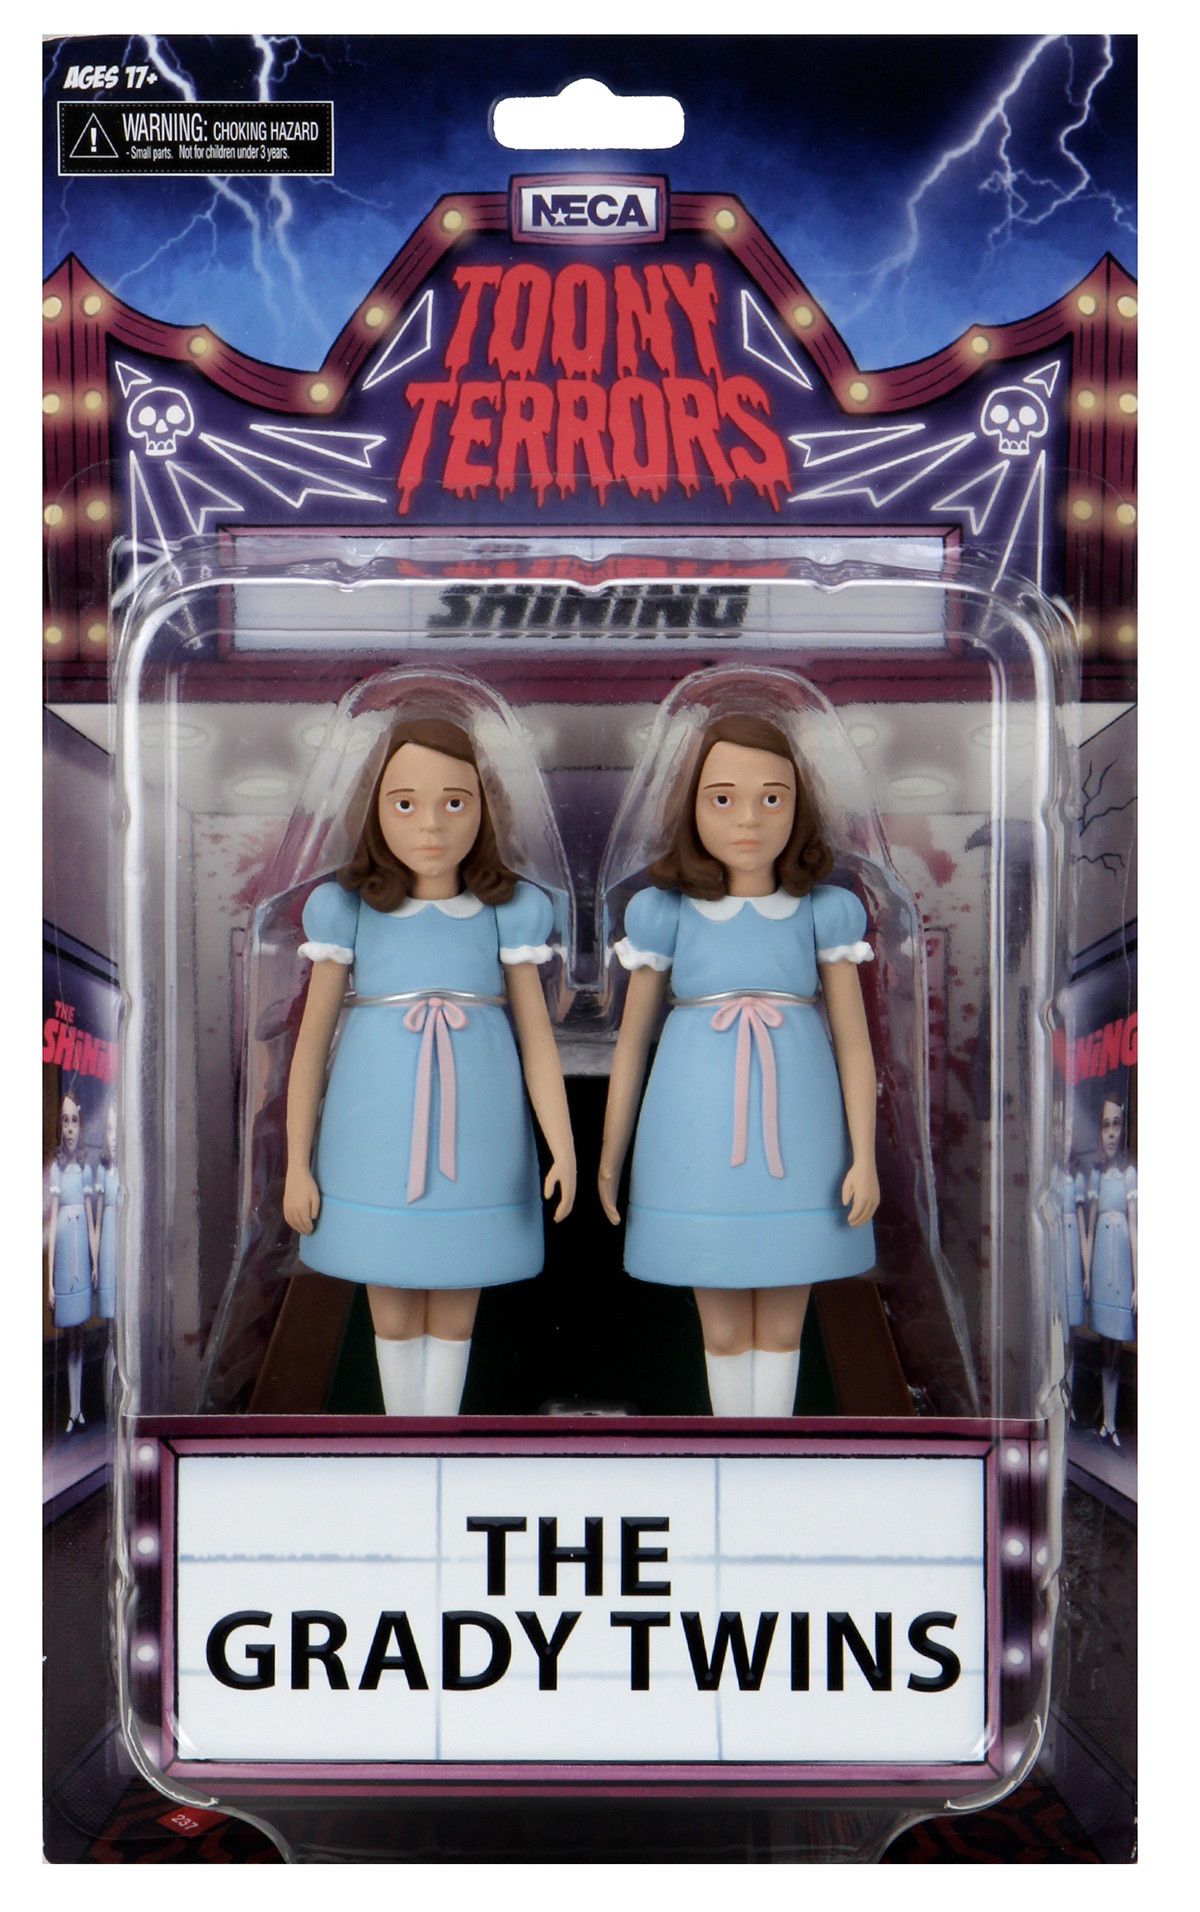 O Iluminado The Grady Twins The Shining Toony Terrors